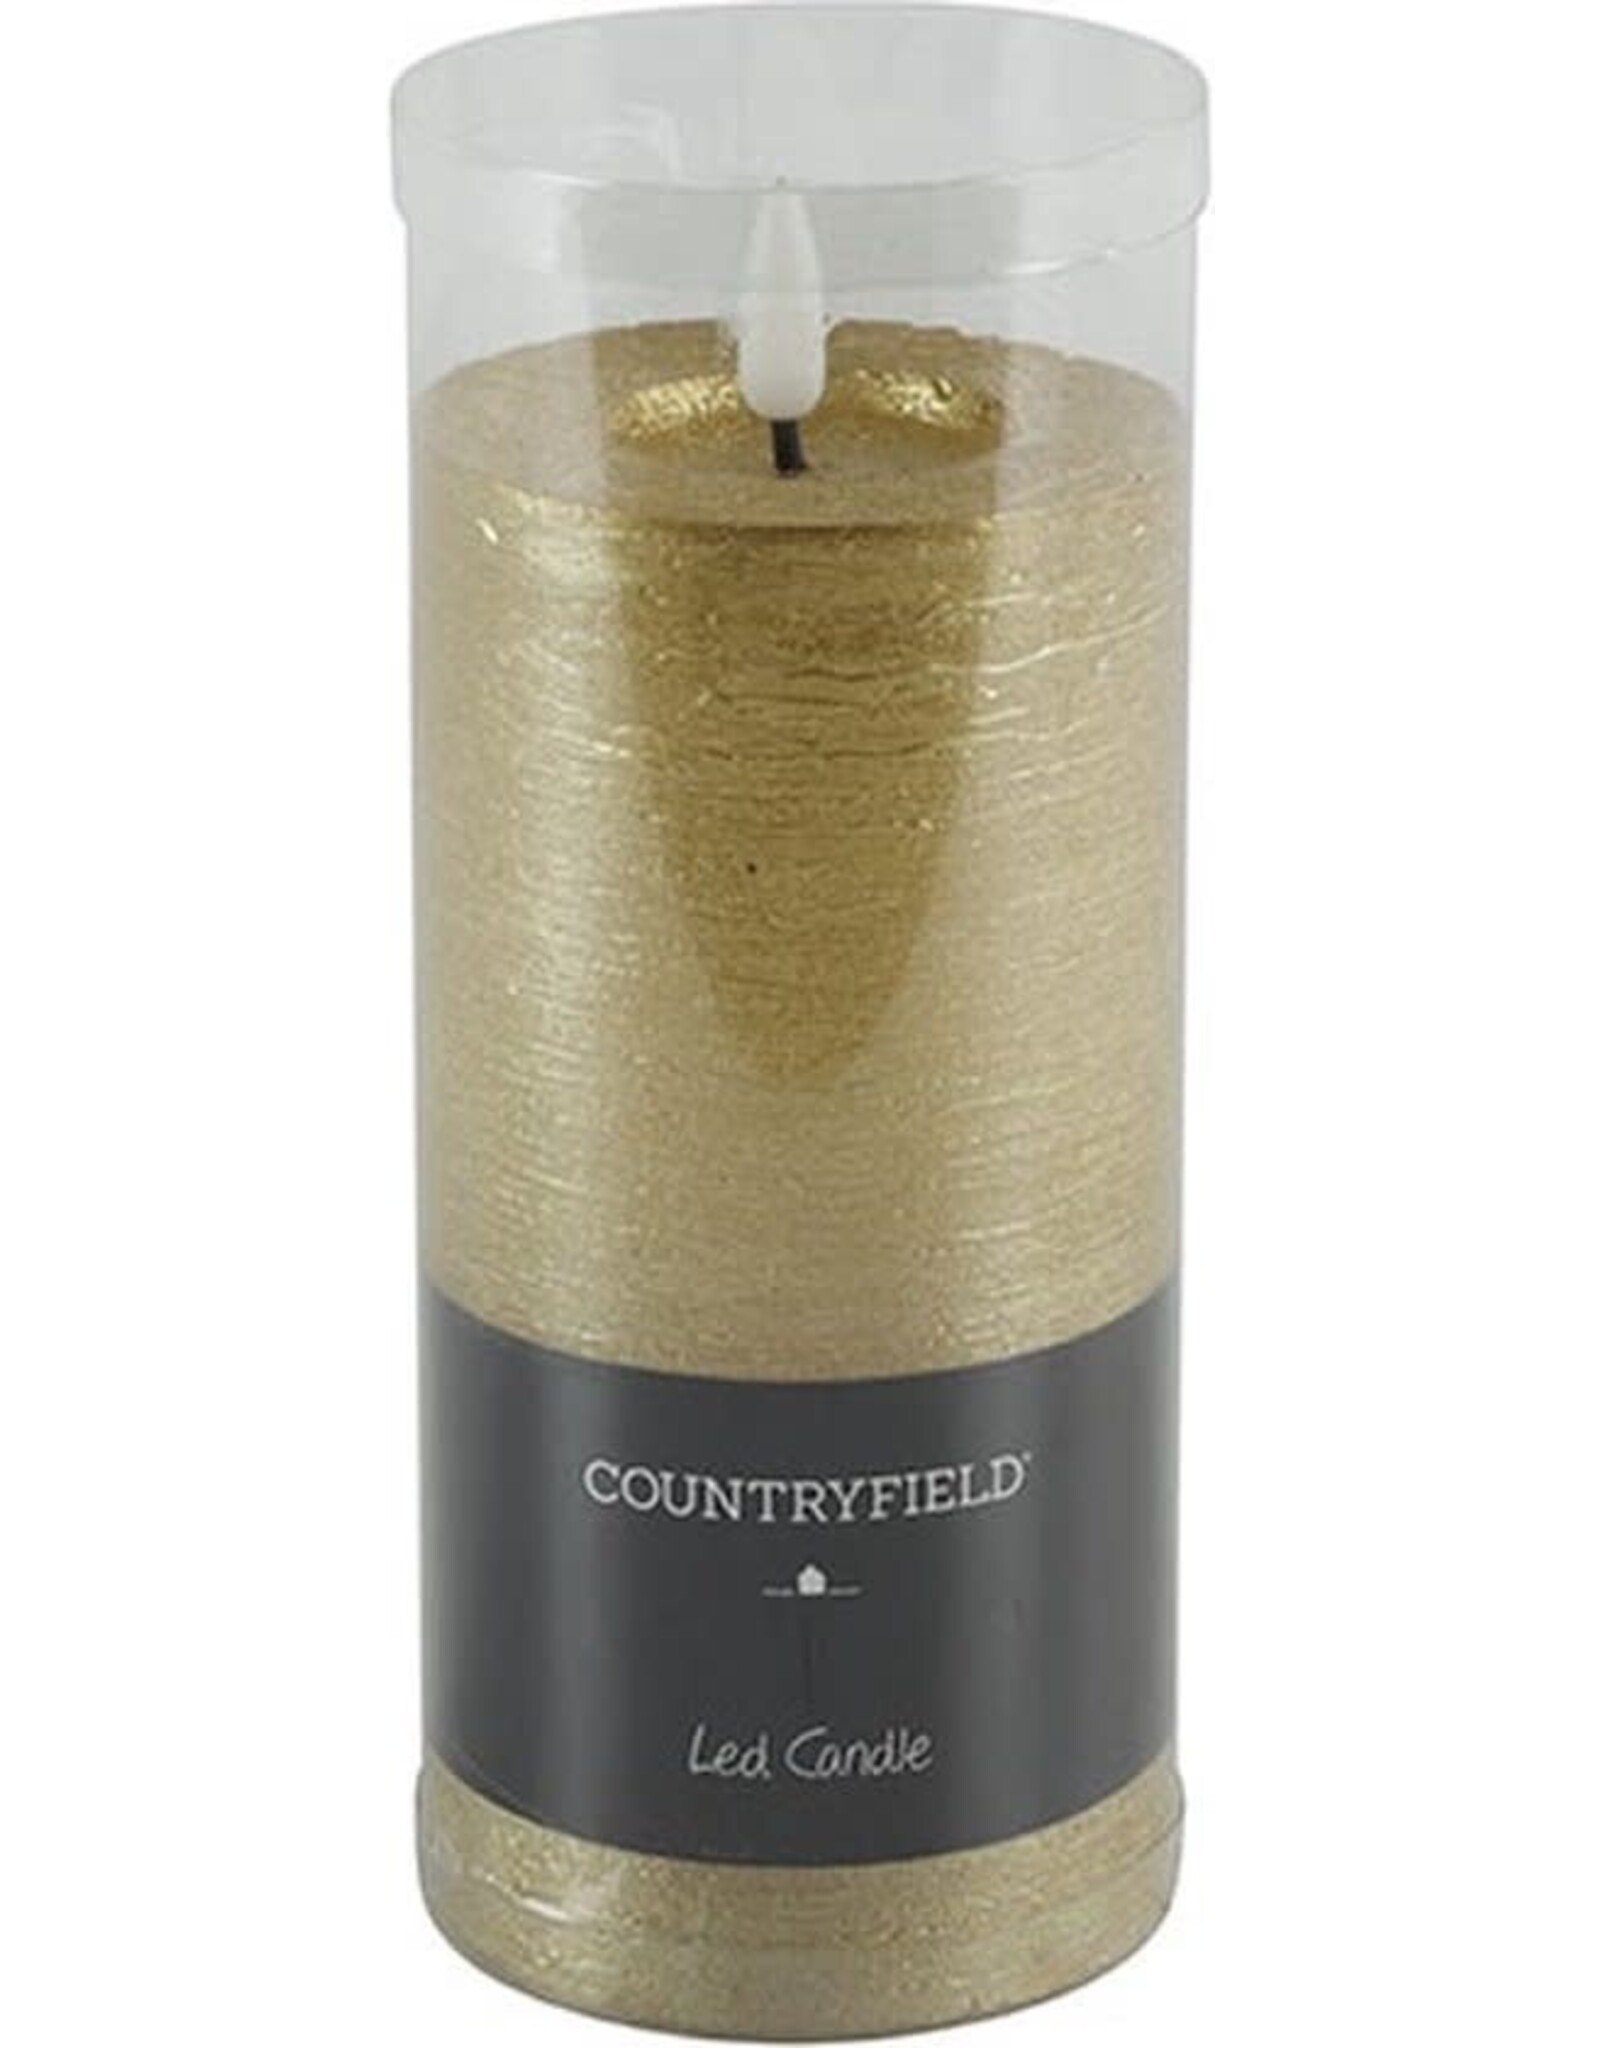 Countryfield LED Stompkaars rustiek 15 cm - Goud